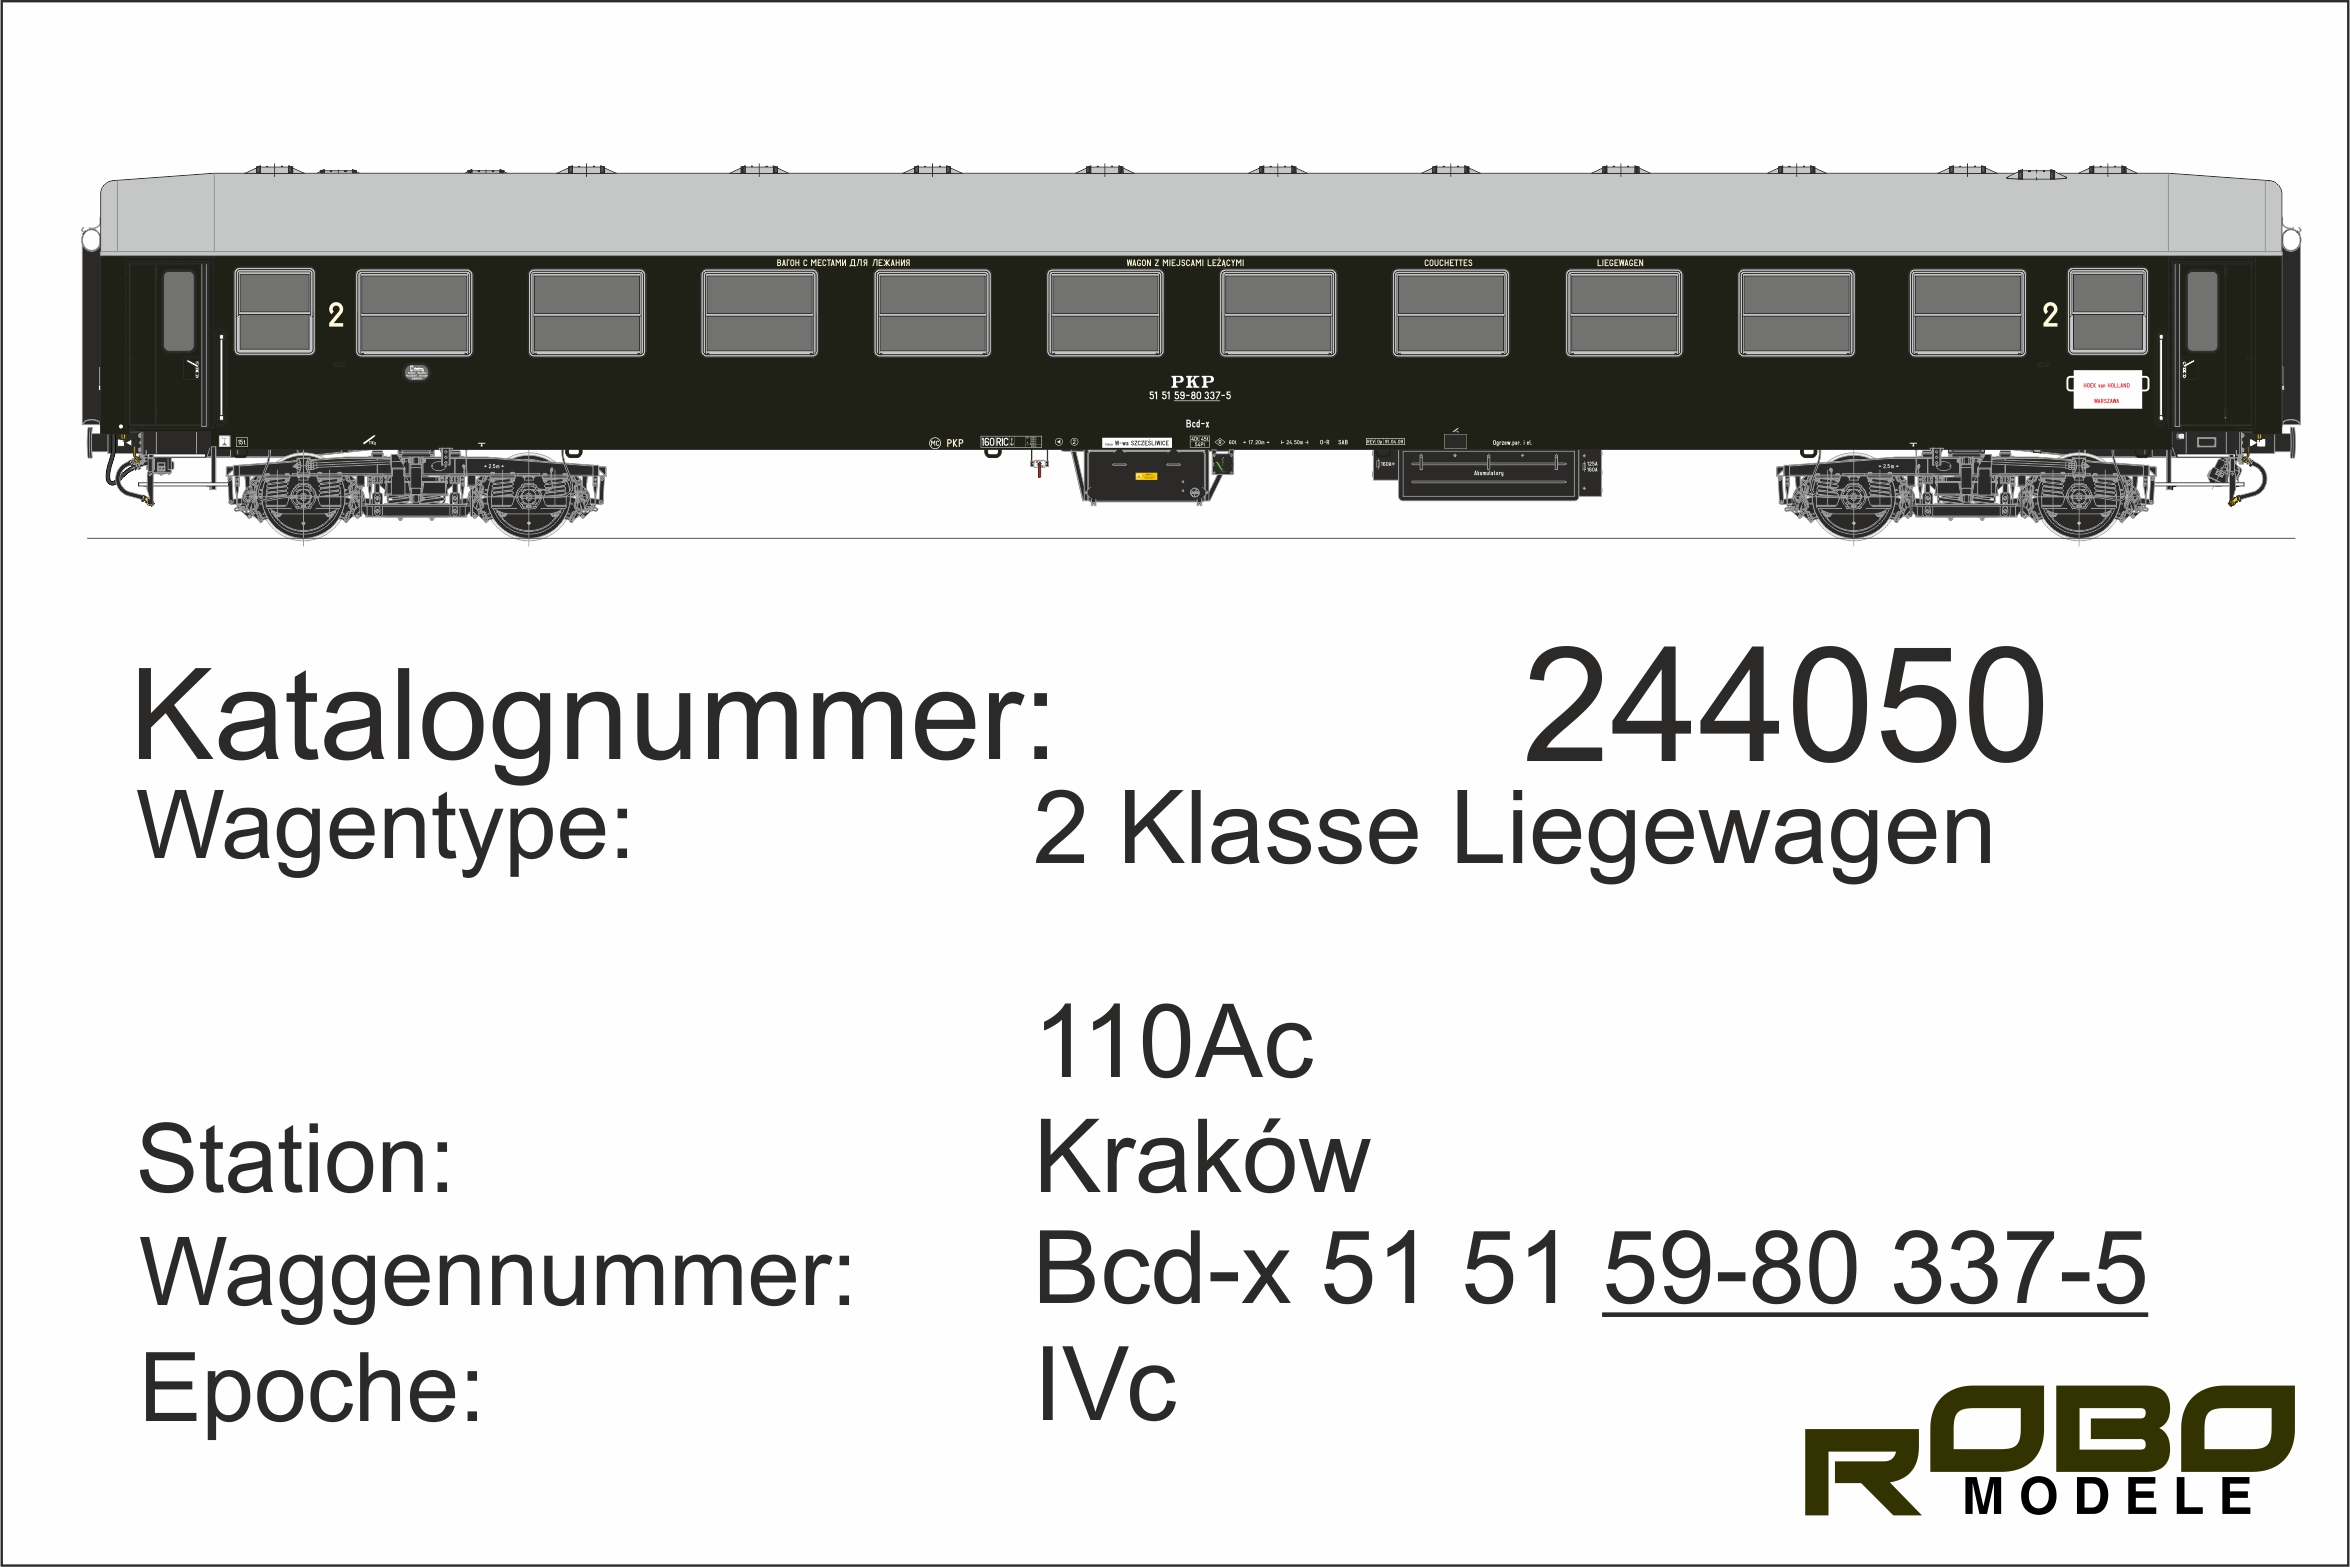 PKP Liege-Wagen 2.Kl grün Typ 110Ac, Ep. IVc, RIC, Olivgrün, Station Warszawa Szczeliwice, 160km/h, mit Zuglaufschild Hoek van Holland - Warschau